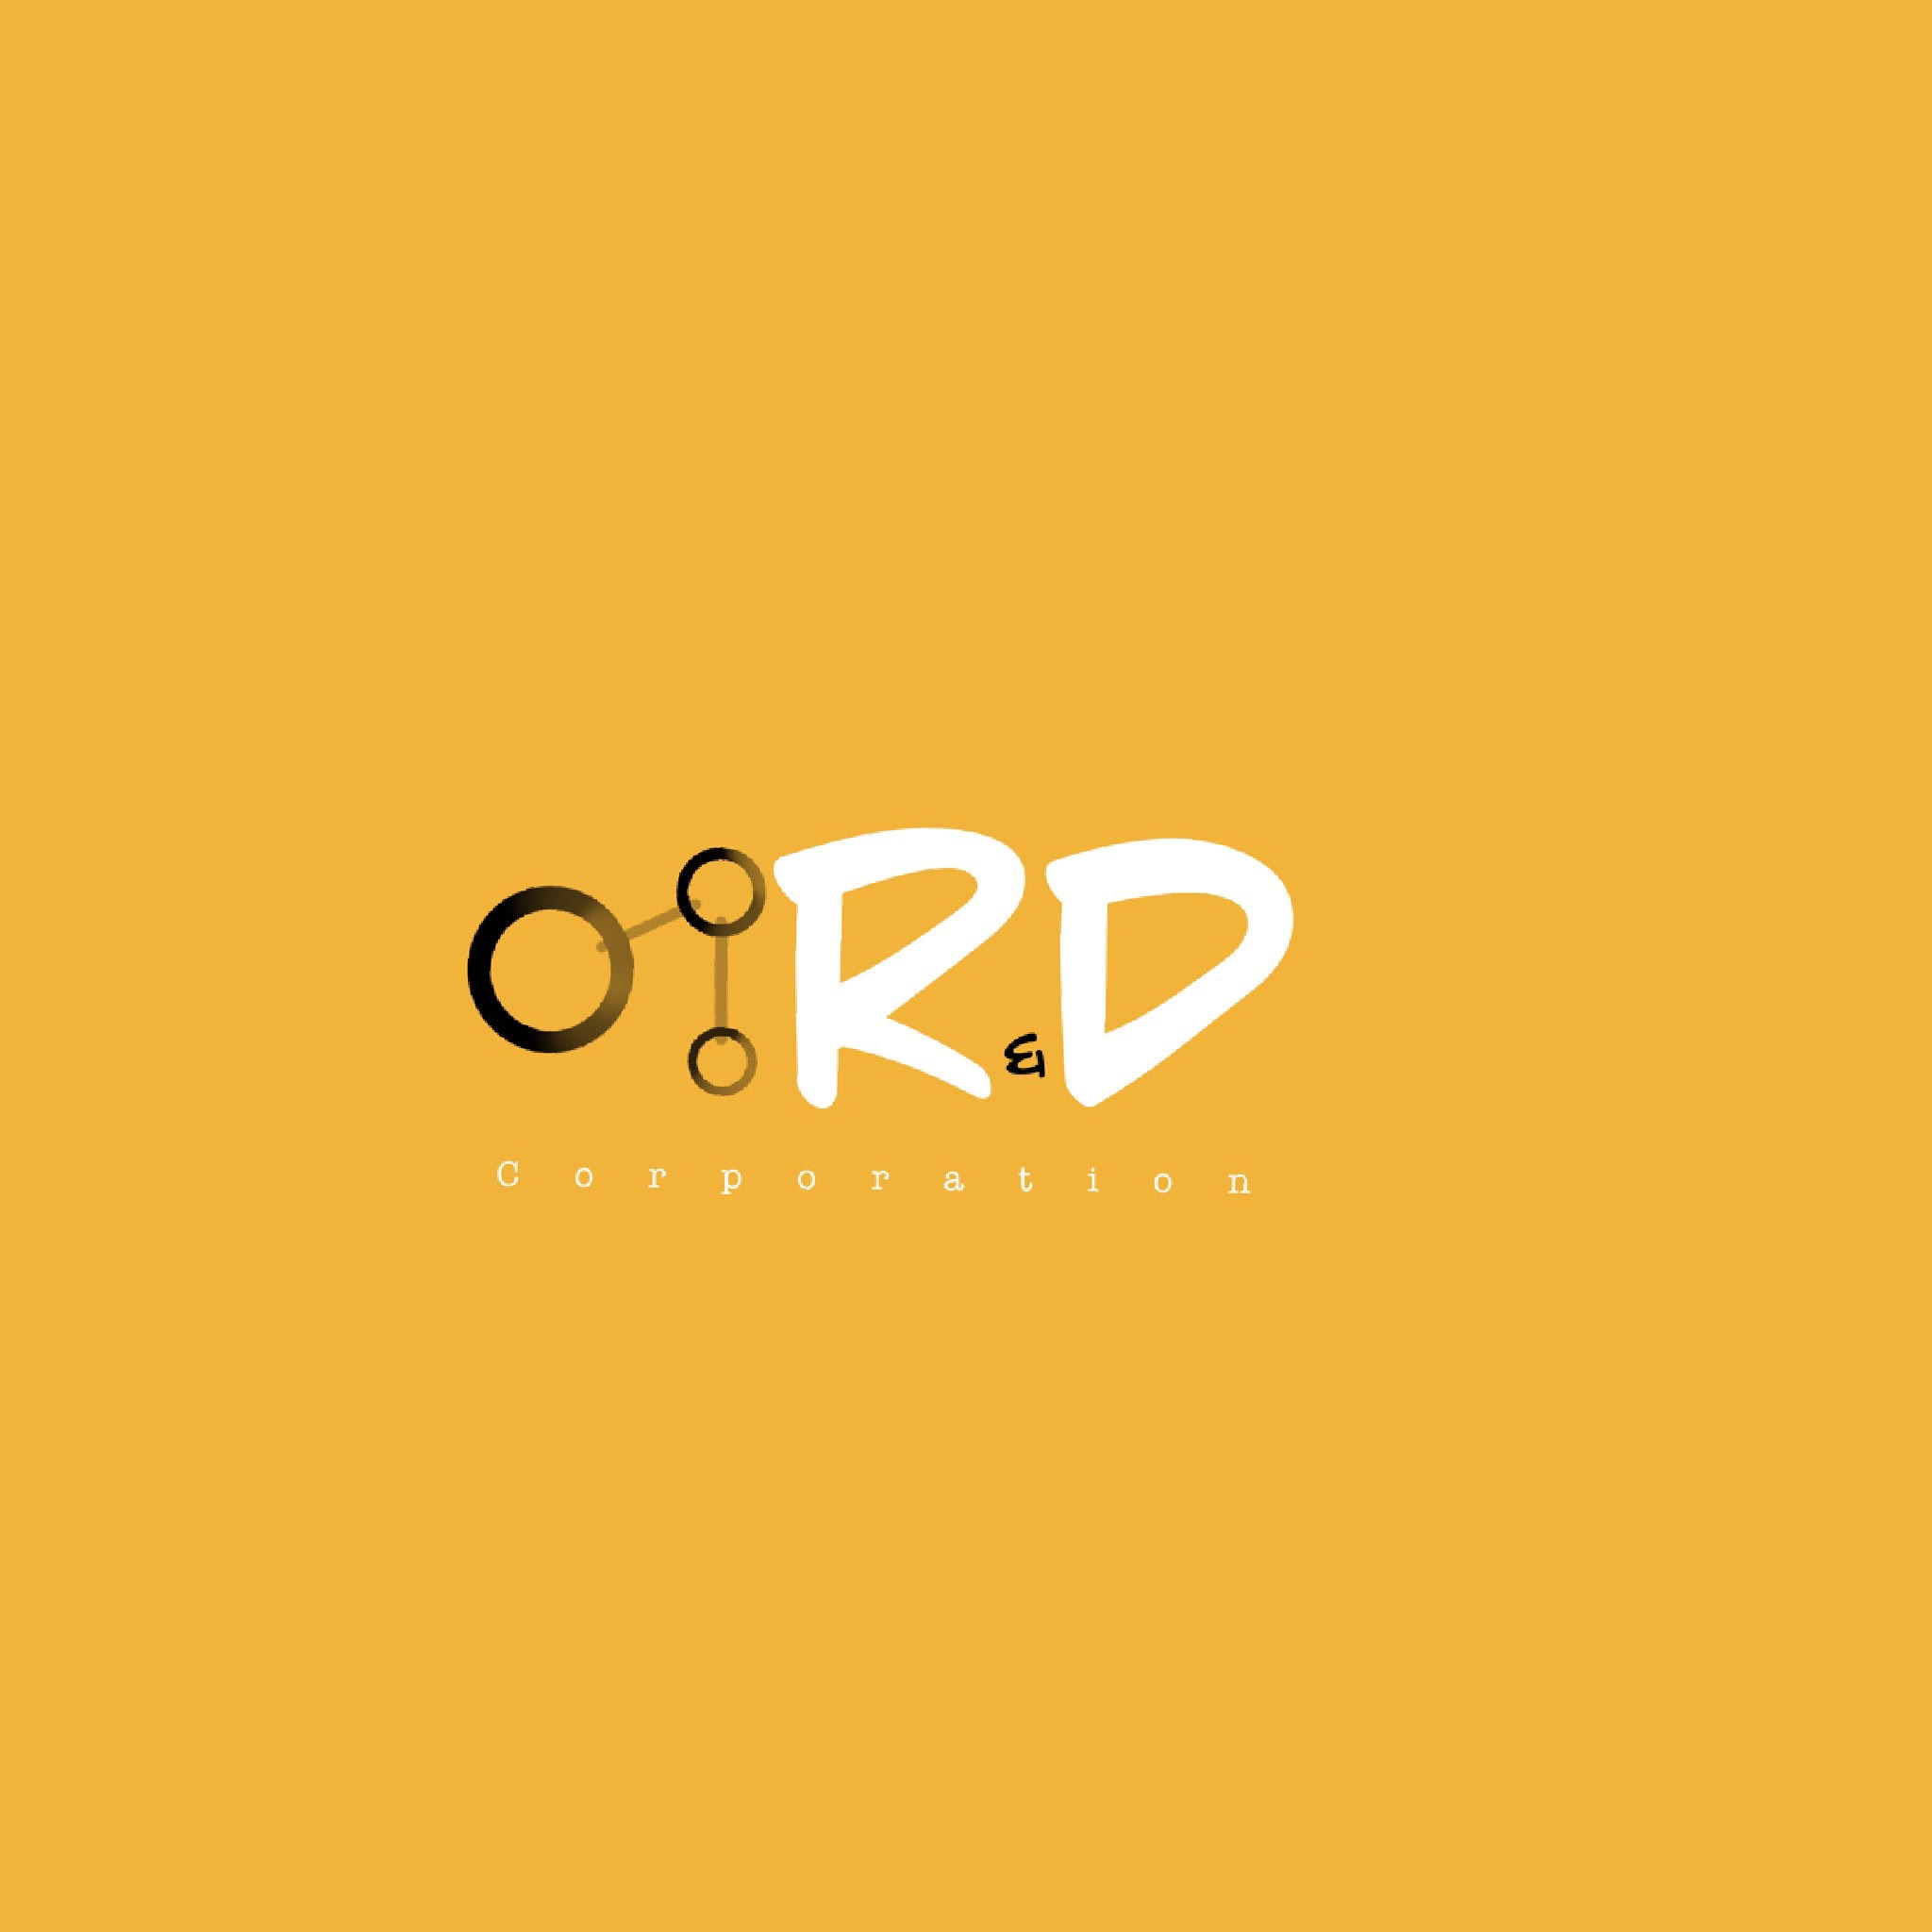 R&D corporation